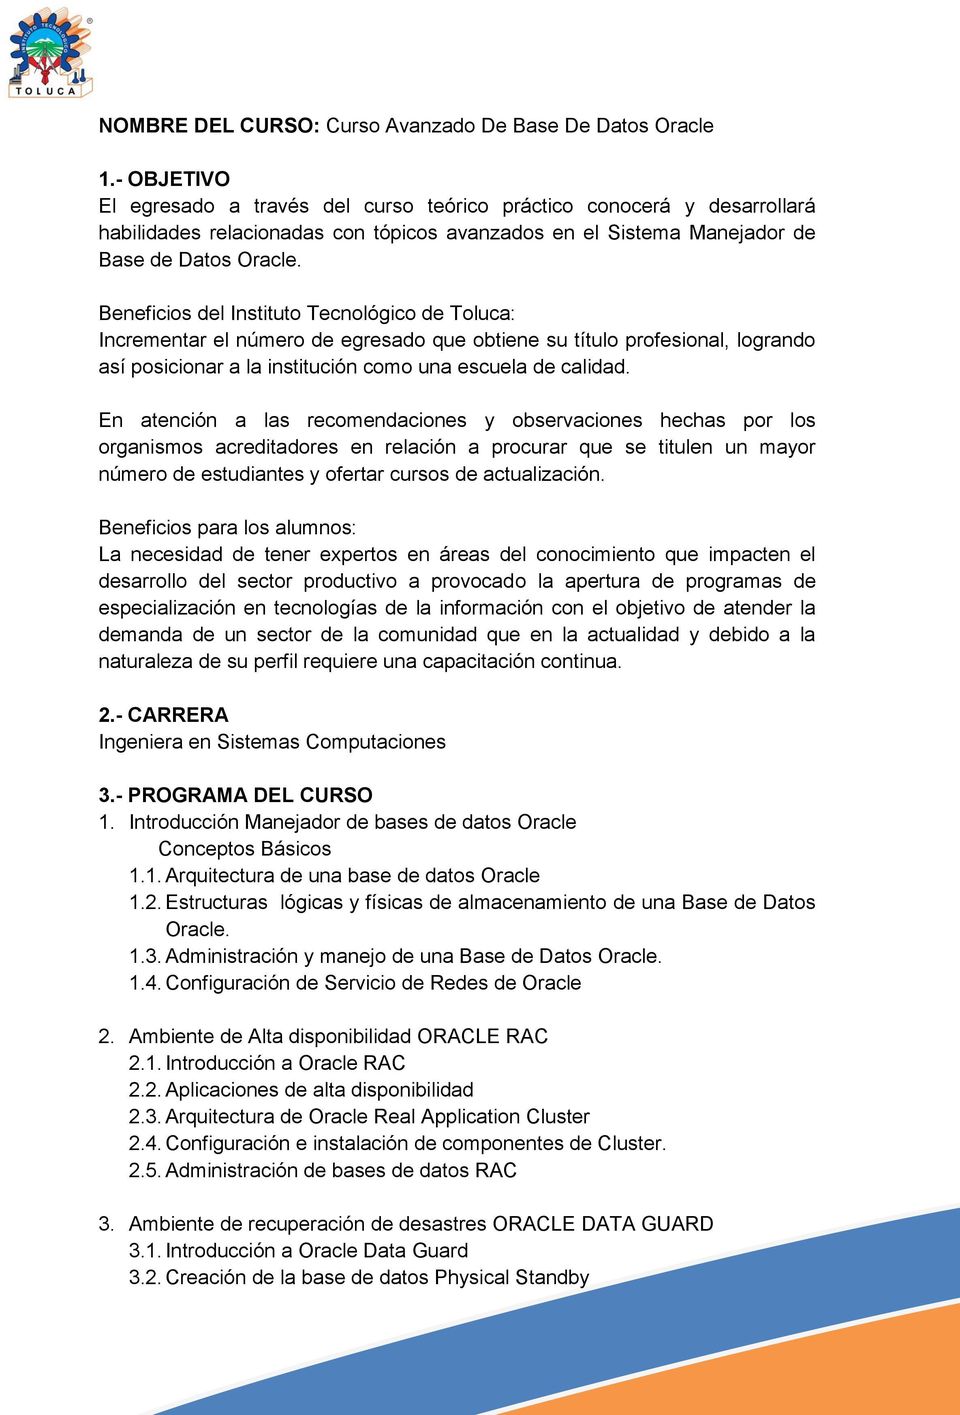 Beneficios del Instituto Tecnológico de Toluca: Incrementar el número de egresado que obtiene su título profesional, logrando así posicionar a la institución como una escuela de calidad.